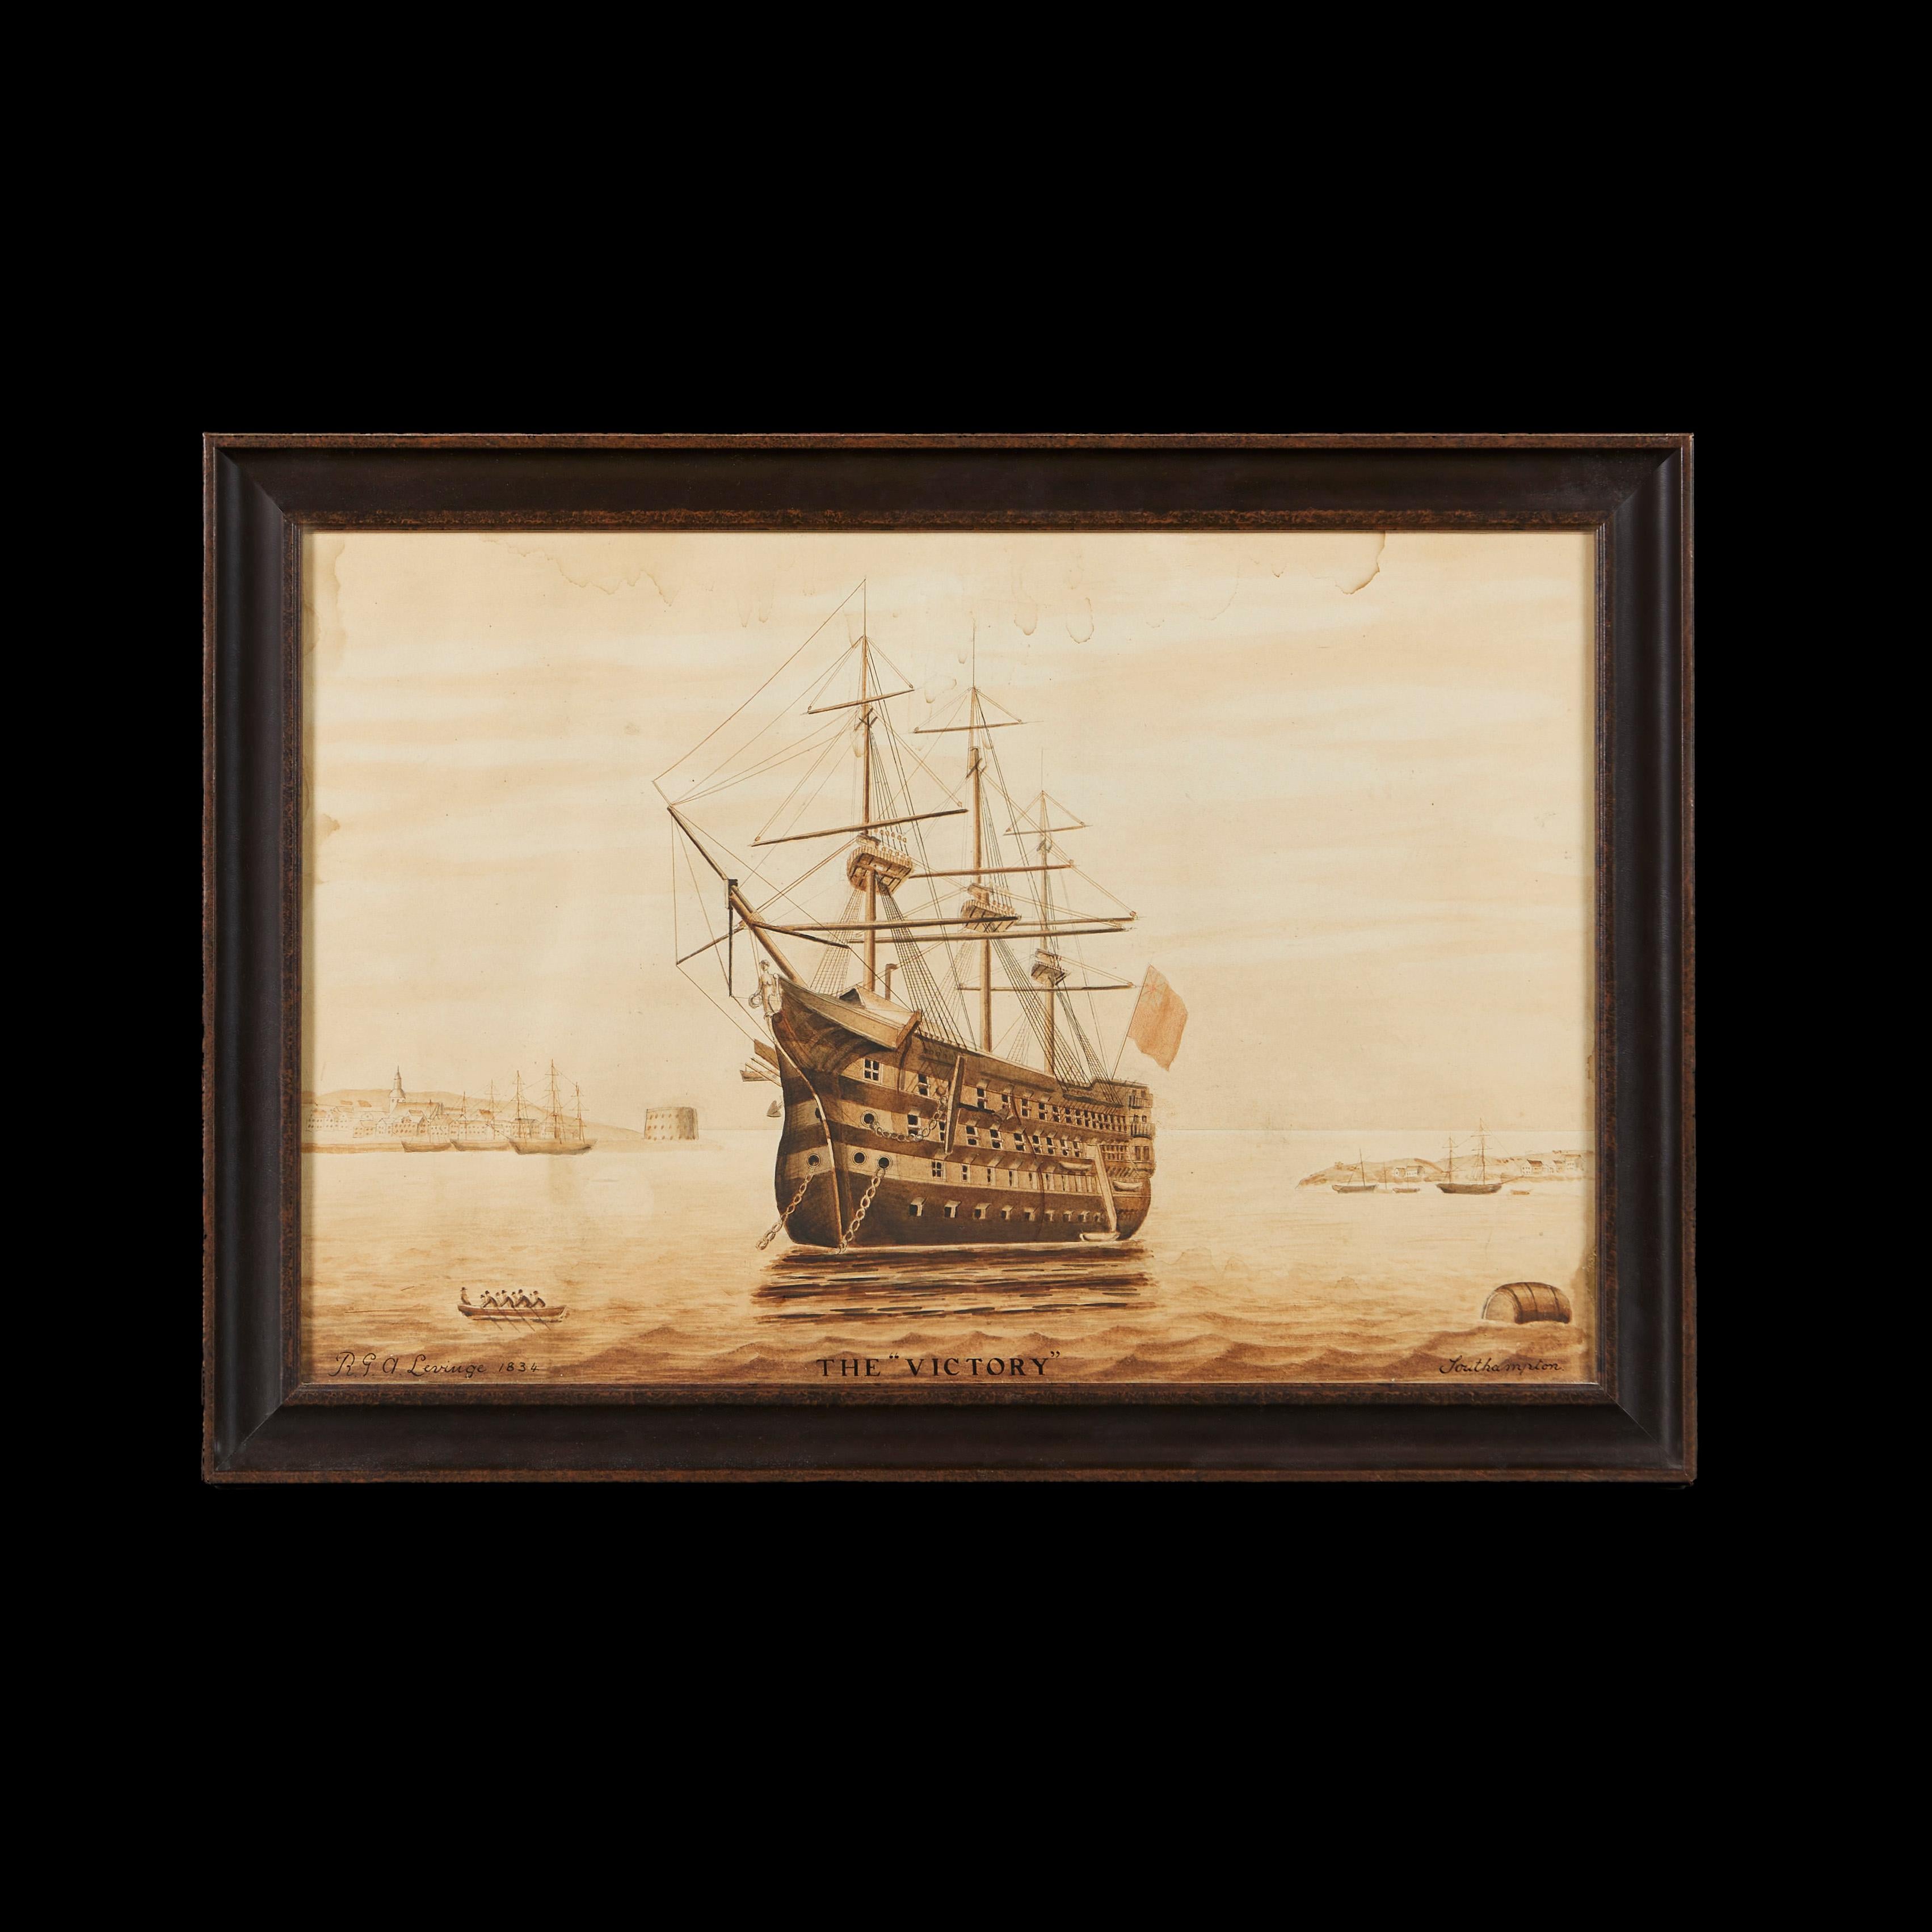 Angleterre, vers 1834

Une aquarelle aux tons sépia représentant le navire amiral de Lord Nelson, le 